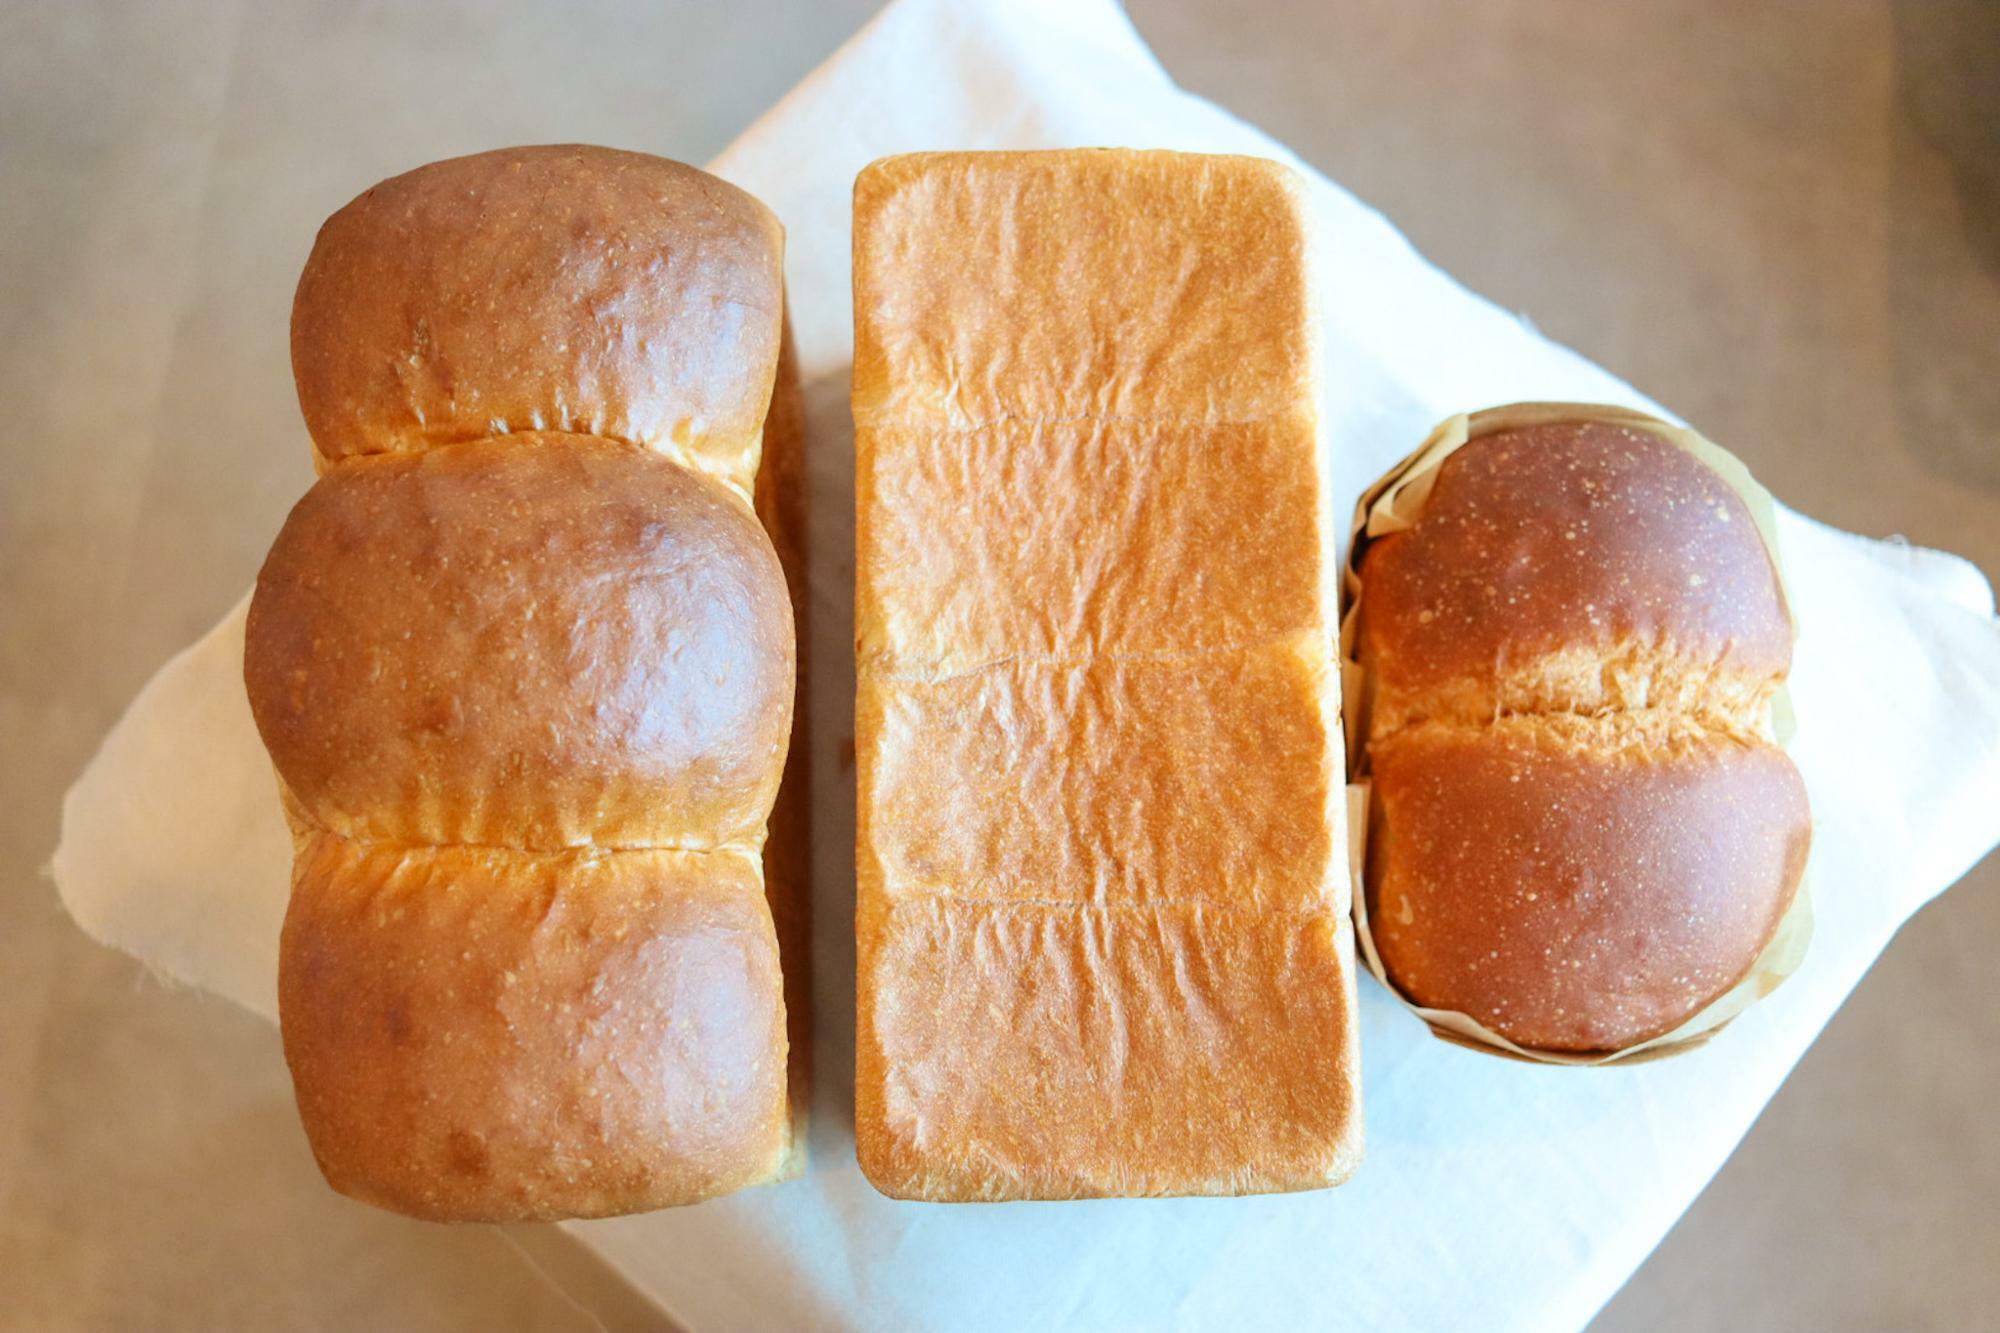 左「山食パン」真ん中「角食パン」右「ハチミツミルクブレッド」